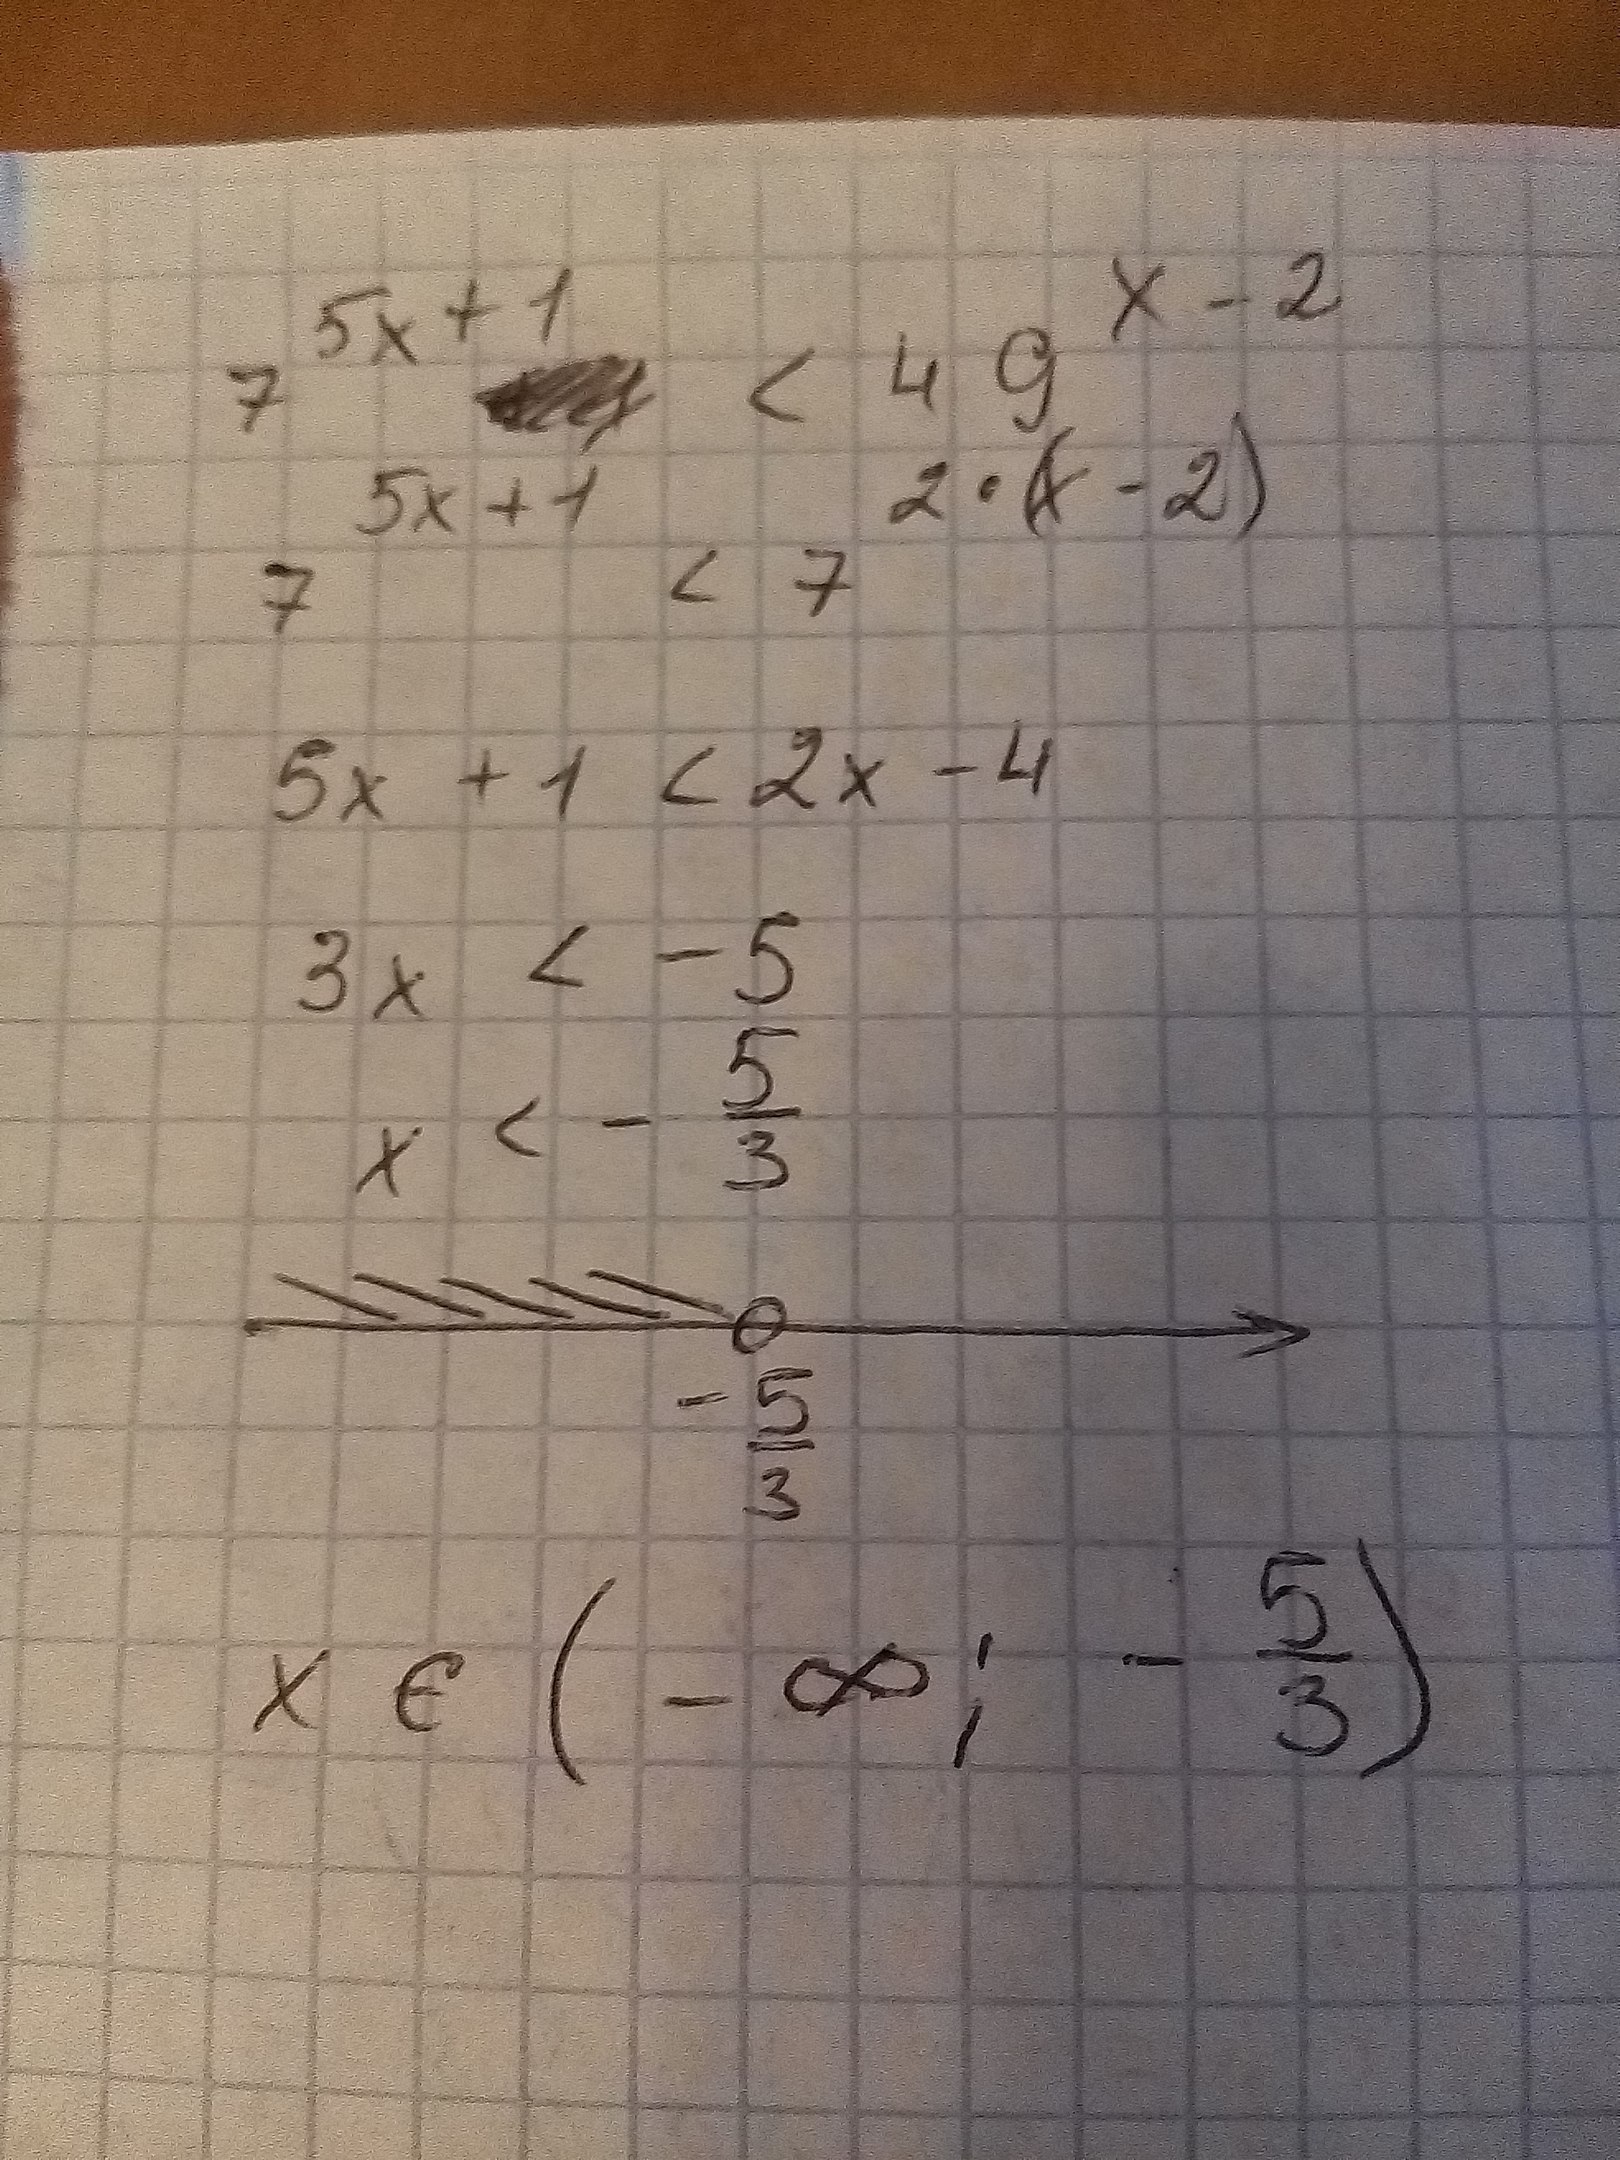 4x 49 0. Решение неравенства x2 49. X^2+49/X^2. 49 Х 1 1/7 Х. Решение неравенств х^2-49.